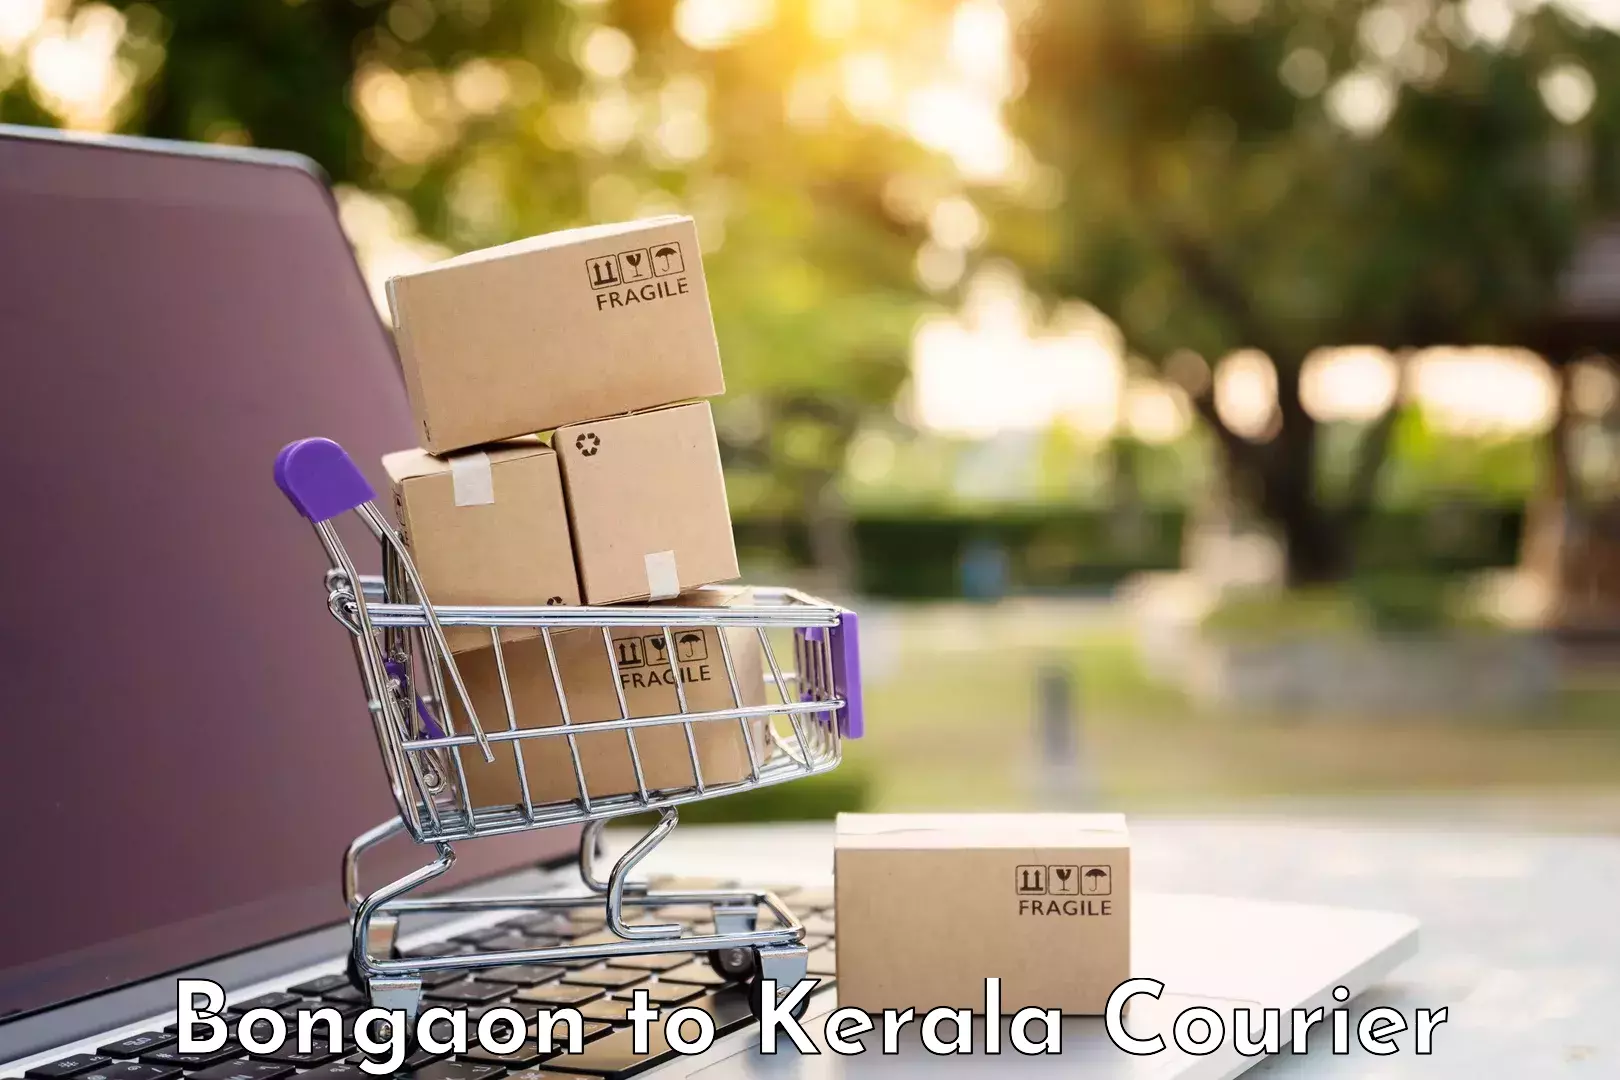 Baggage delivery optimization Bongaon to Karunagappally